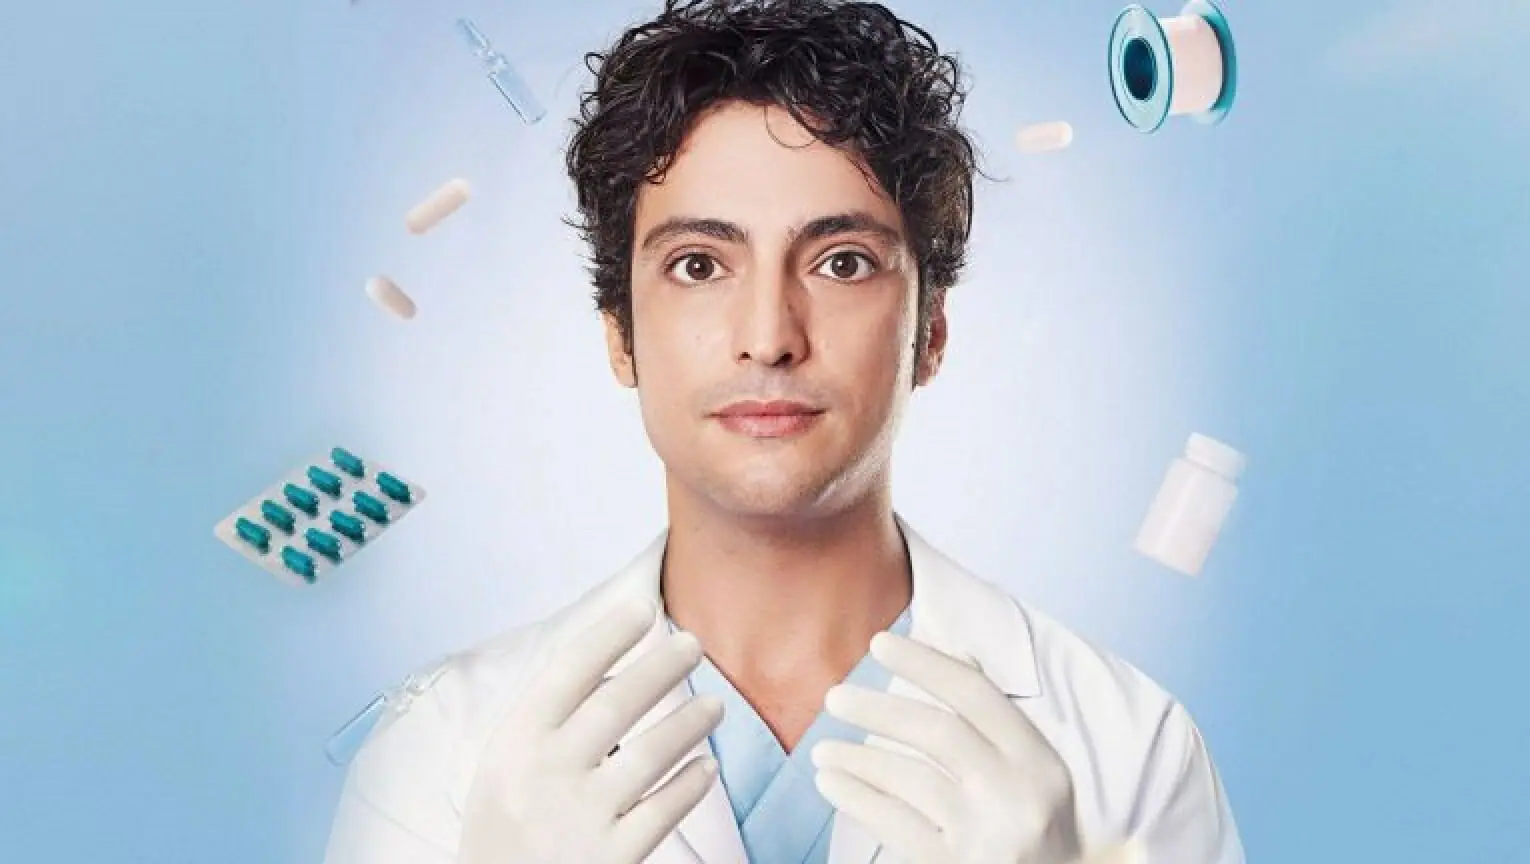 Ali Vefa (Taner Ölmez) é o protagonista de Um Milagre, versão turca de The Good Doctor